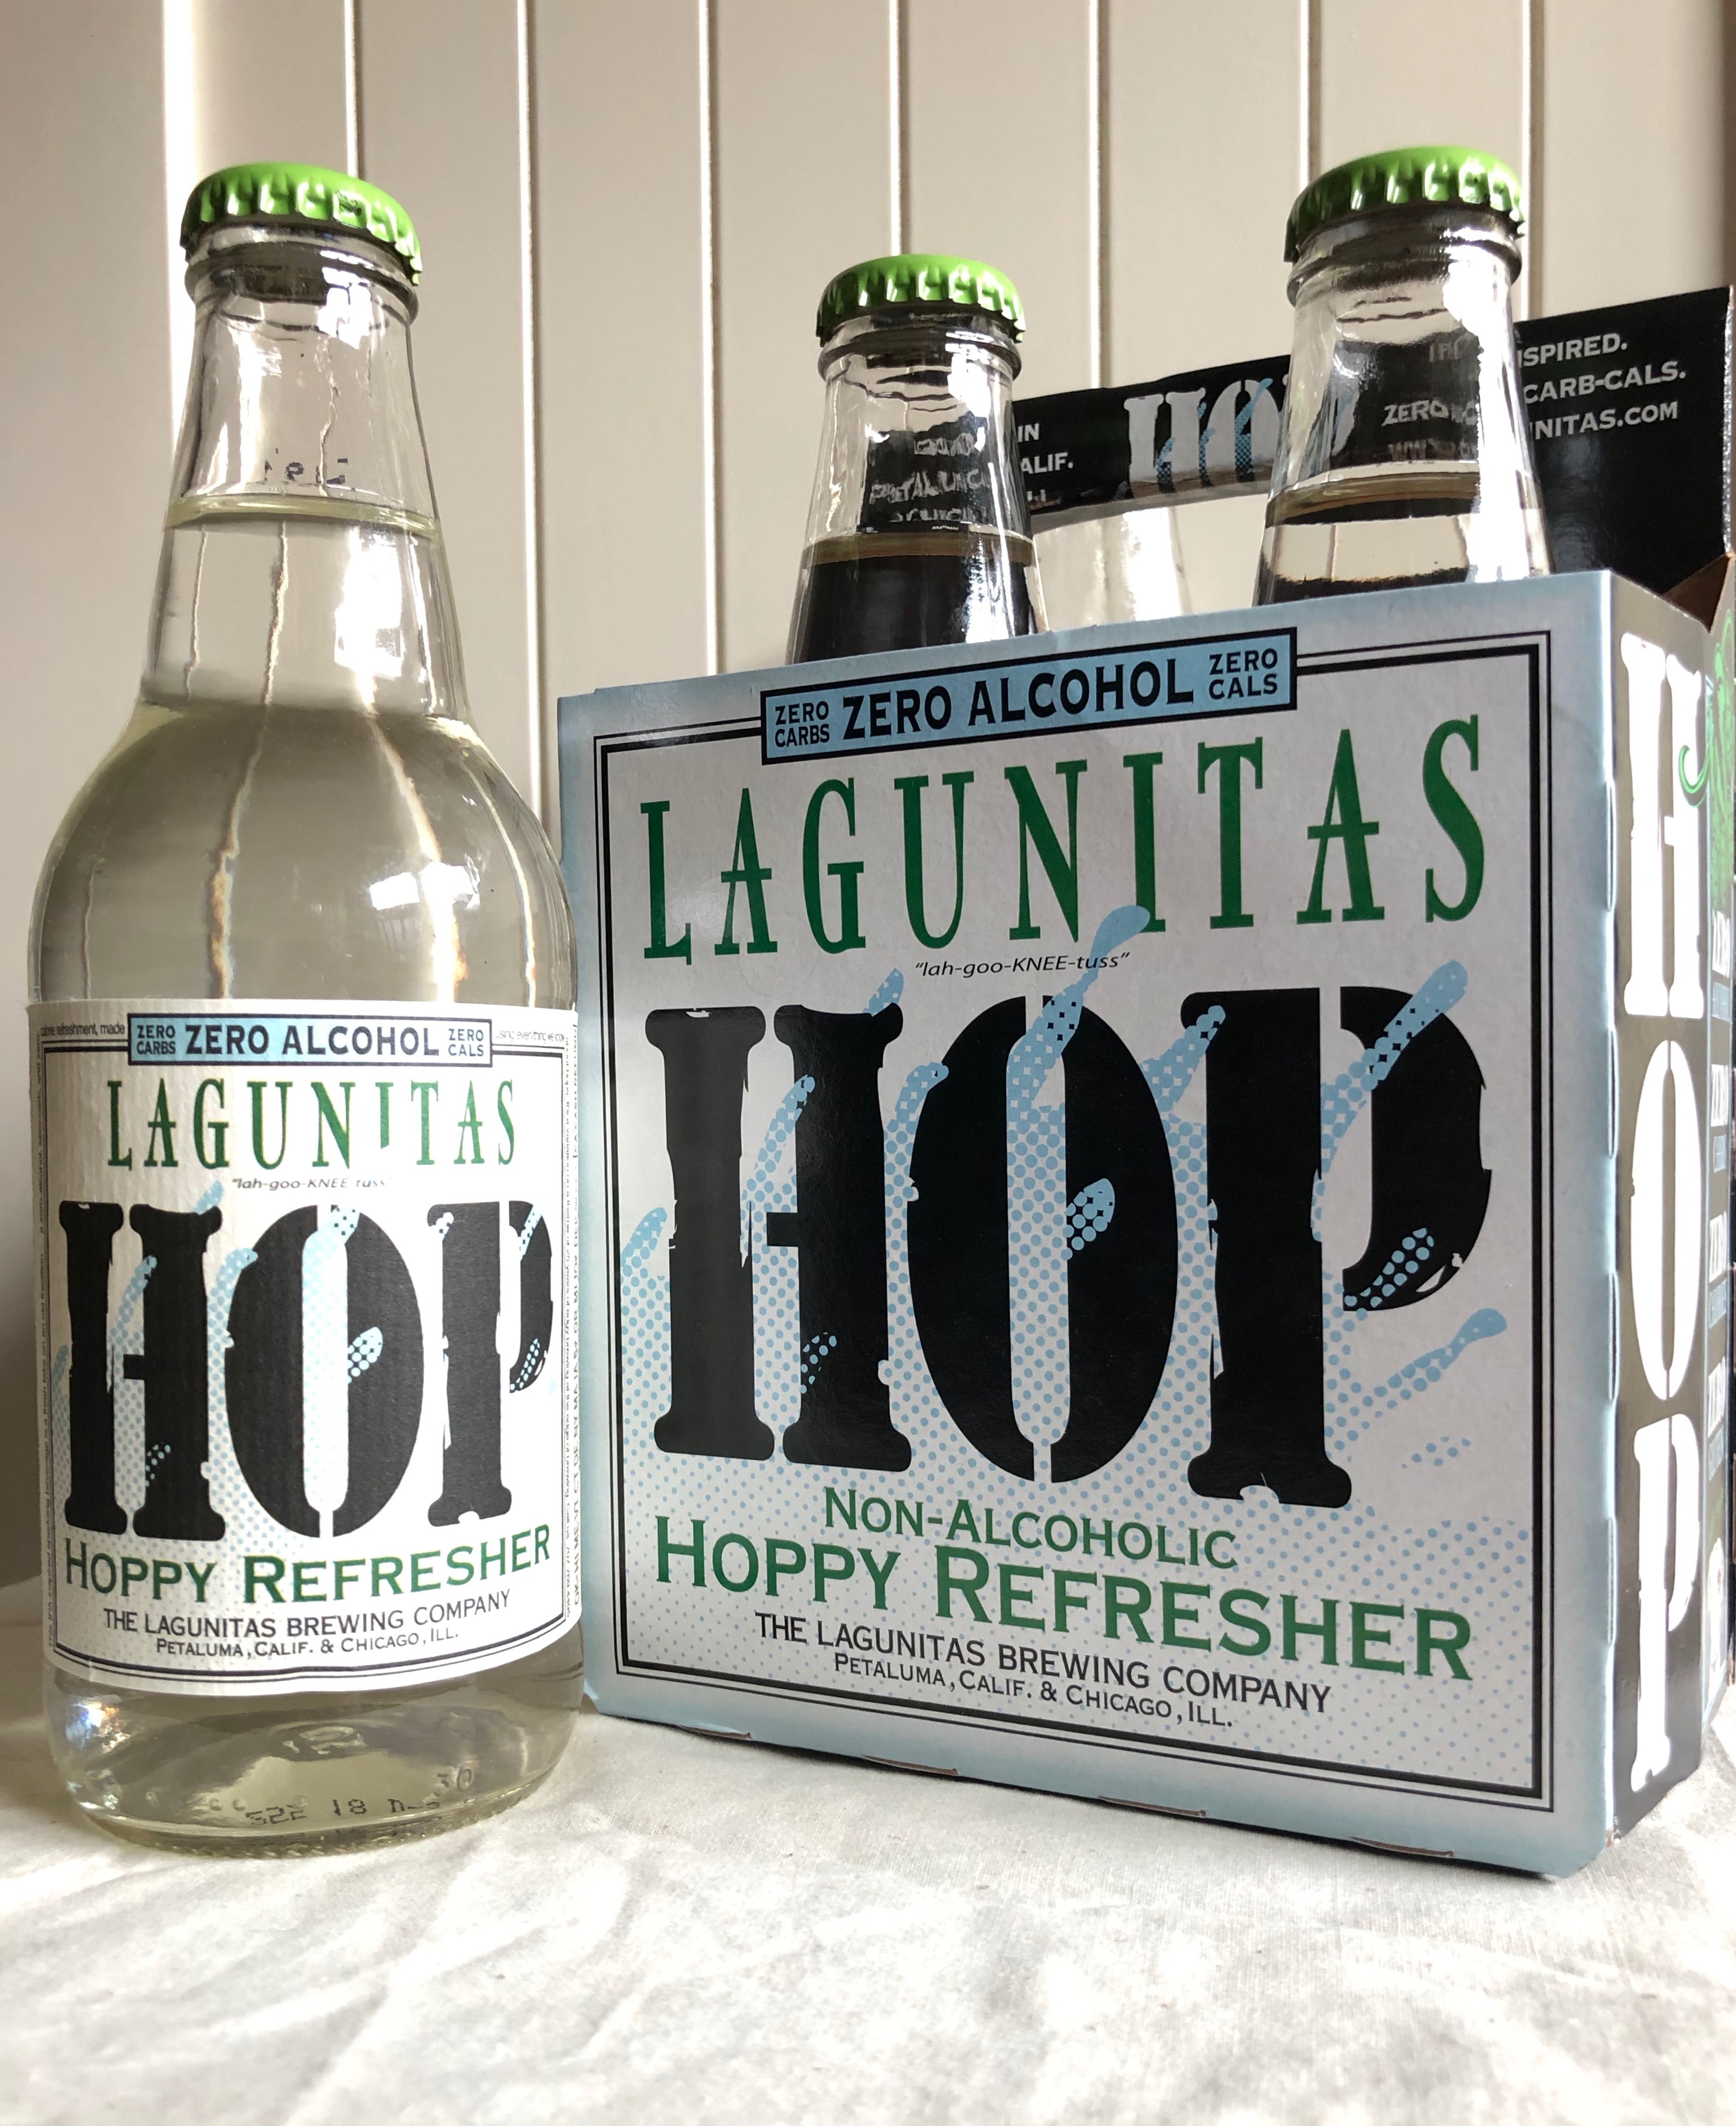 A four pack of the new Lagunitas Hop Hoppy Refresher.